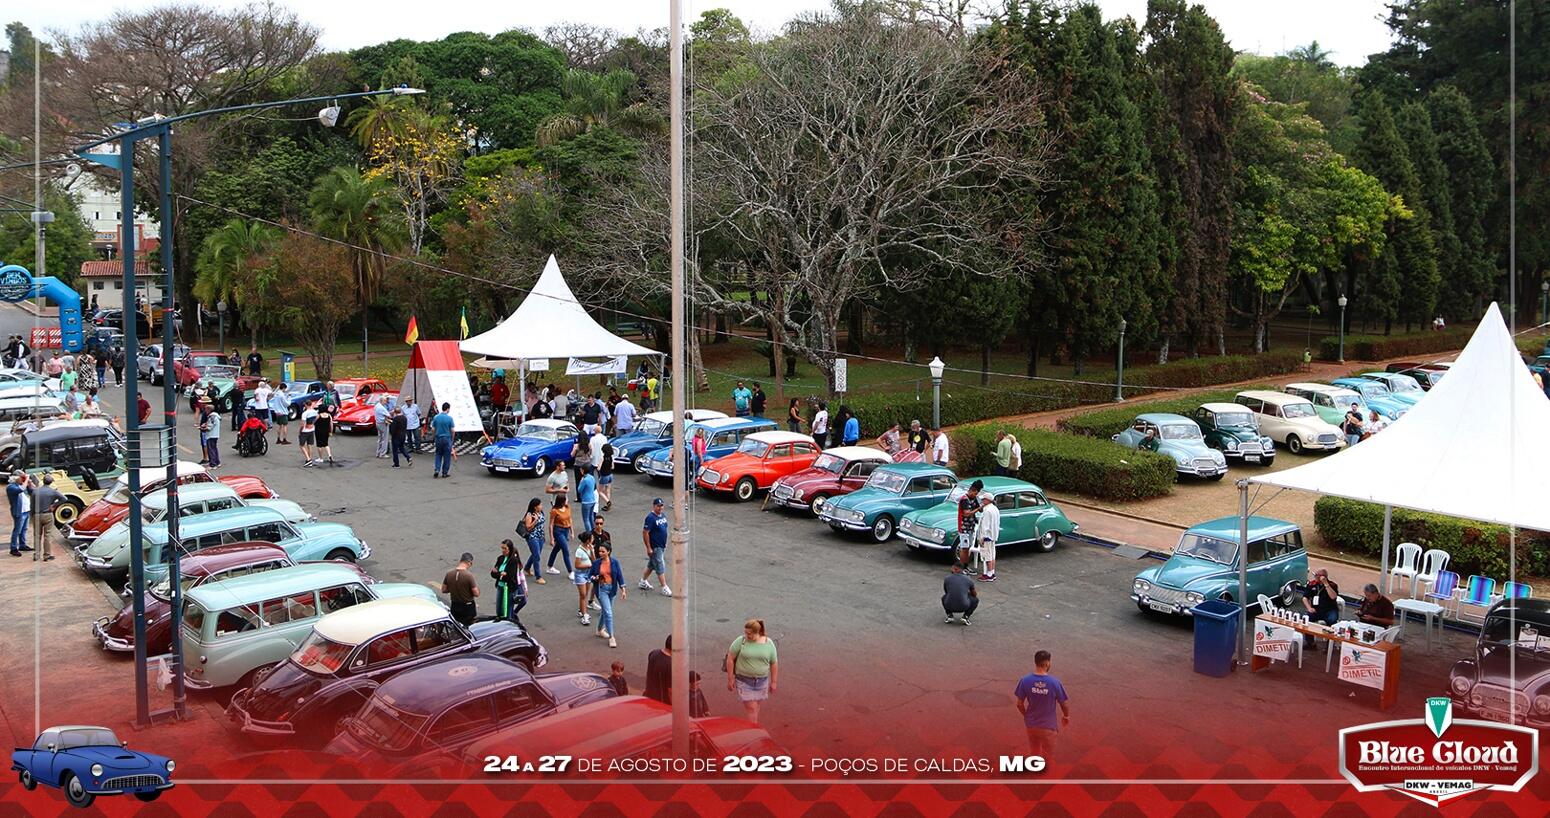 Encontro Mensal do 6 Pistas BH Car Club - Belo Horizonte, MG - Maxicar